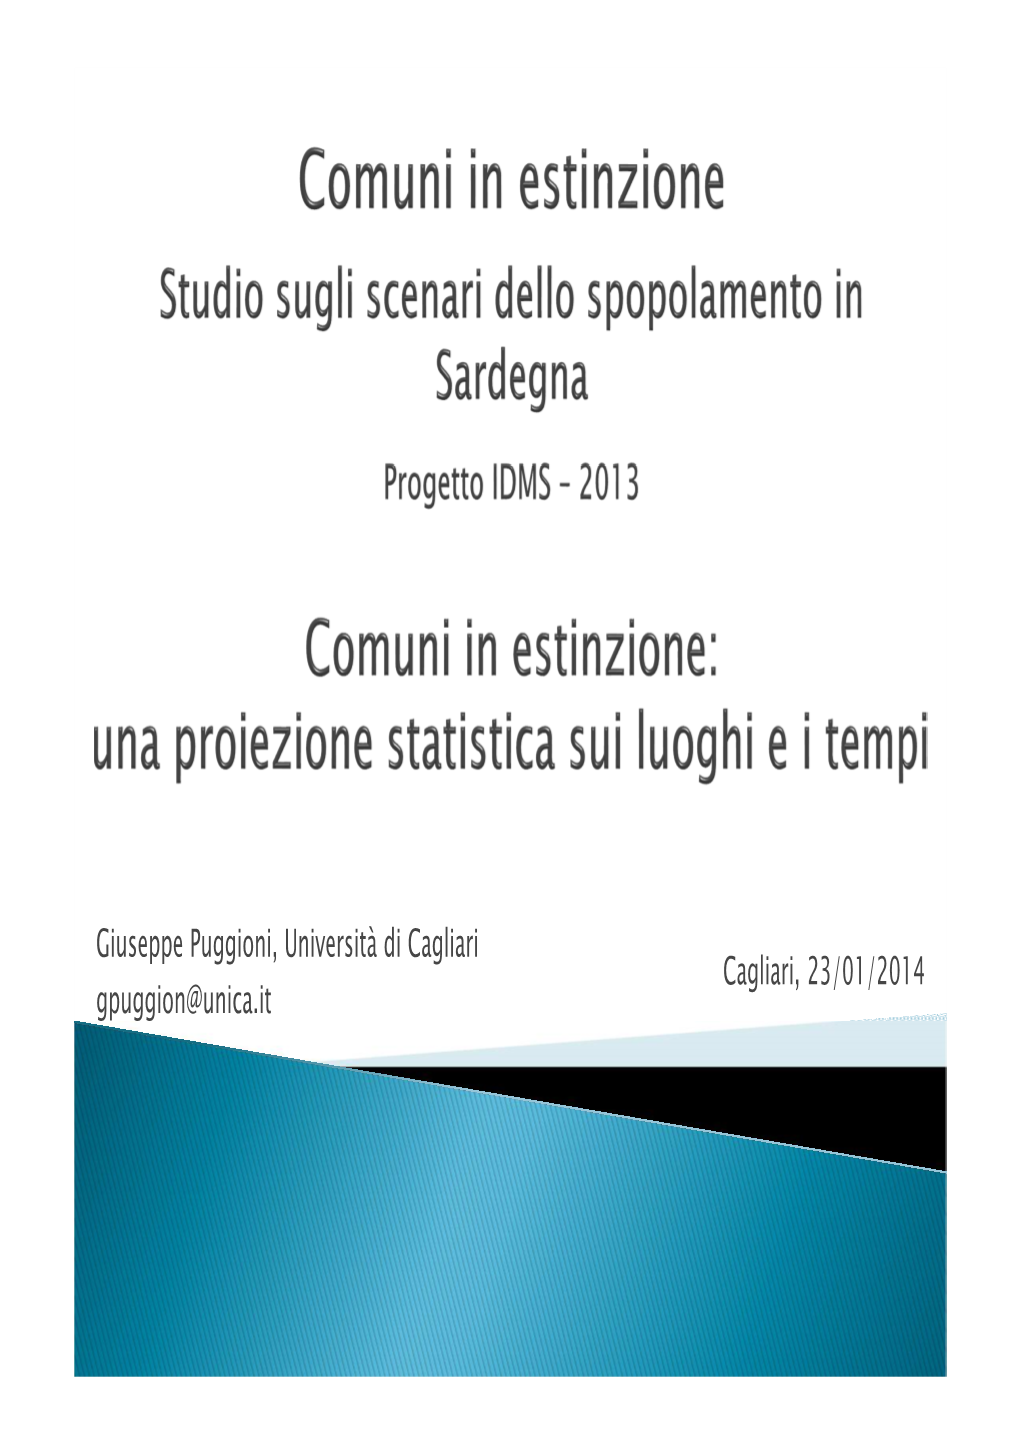 Giuseppe Puggioni, Università Di Cagliari Cagliari, 23/01/2014 Gpuggion@Unica.It